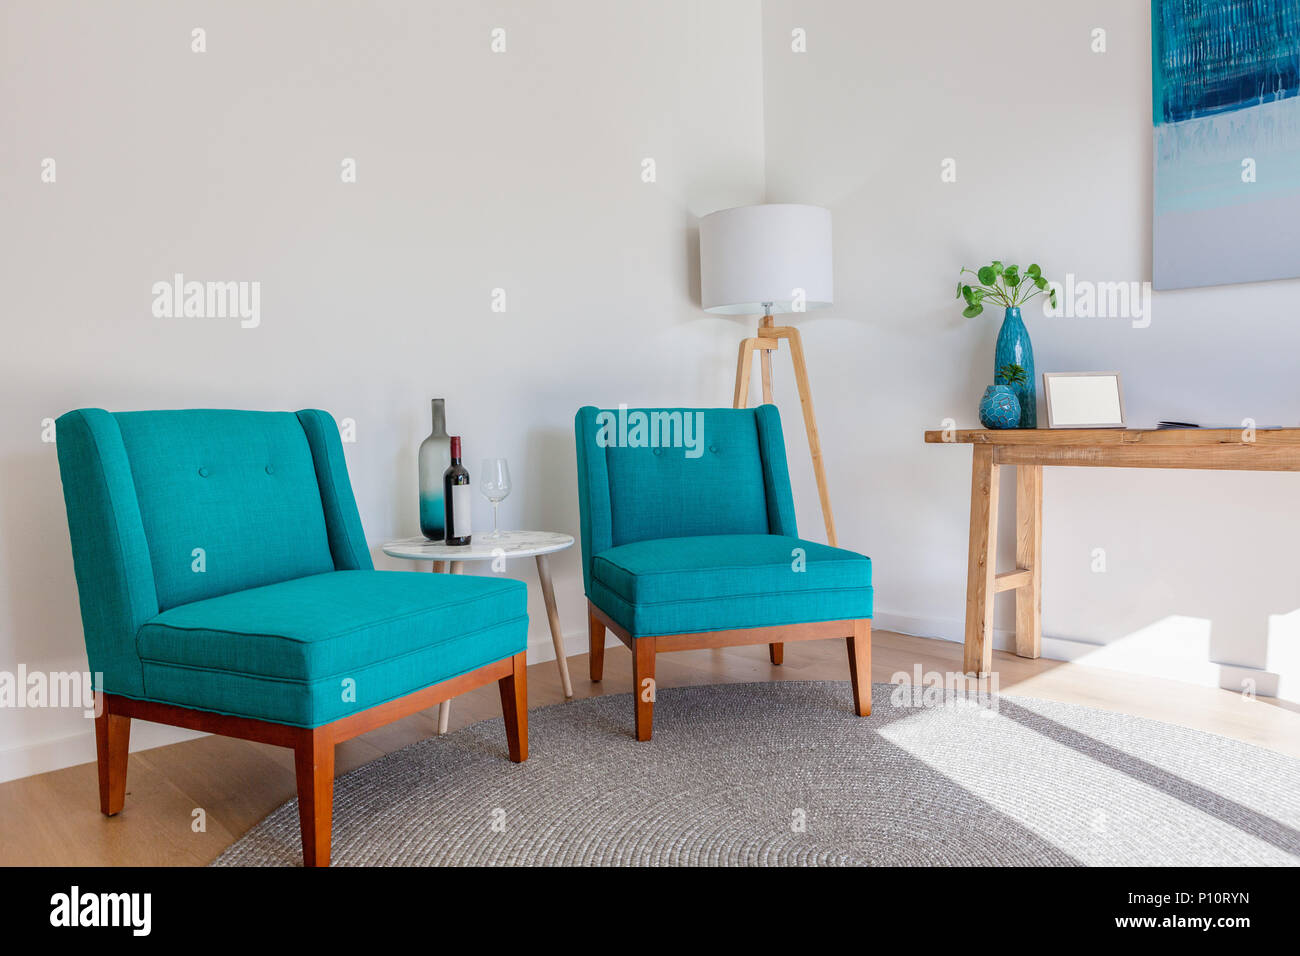 Muebles escandinavos interior con espacio de copia: sillones, mesas  pequeñas y una lámpara bajo la luz solar natural Fotografía de stock - Alamy